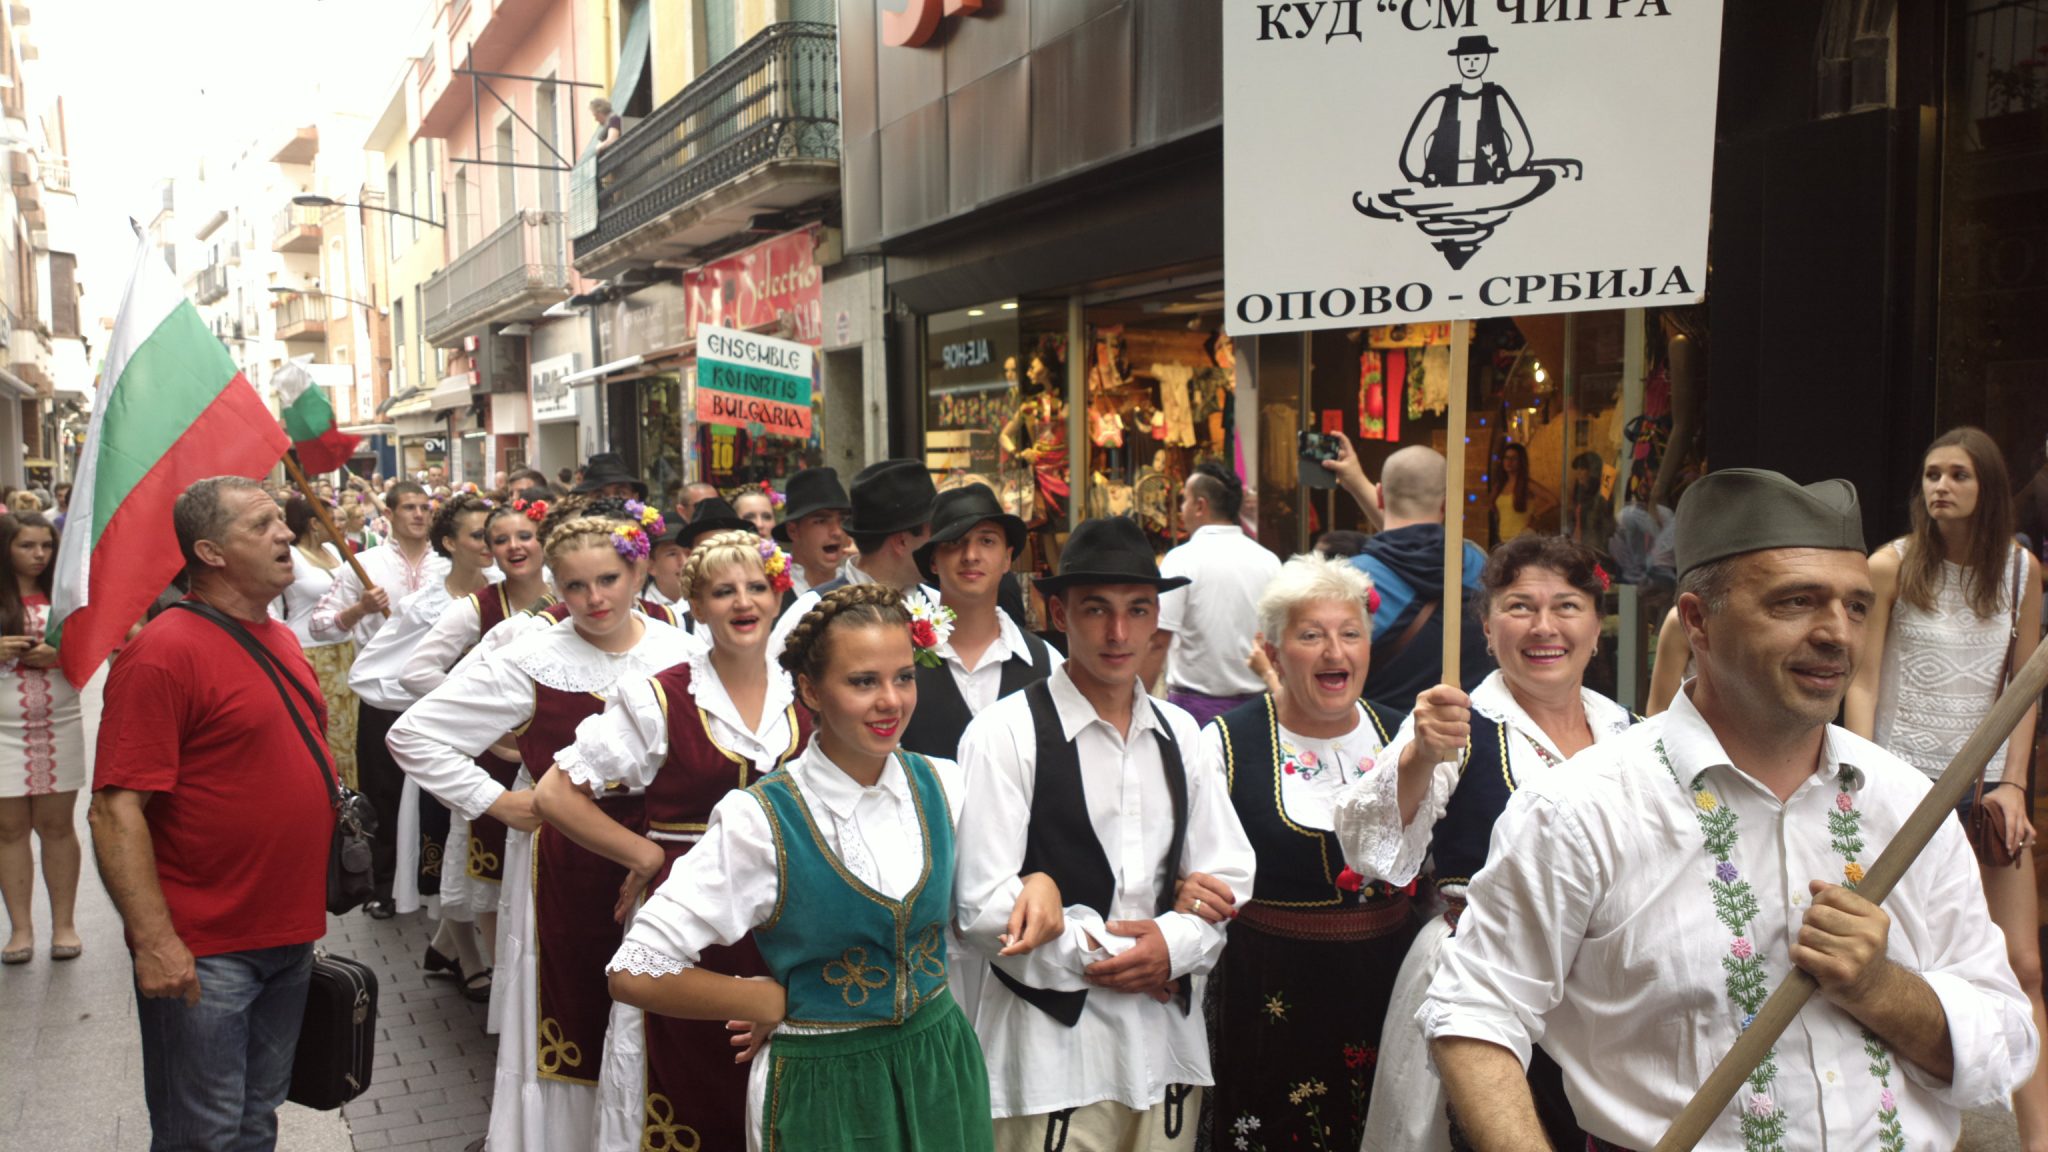 Međunarodni festival folklora u Ljoret de Maru u Španiji: APLAUZI ZA IGRE IZ BANATA